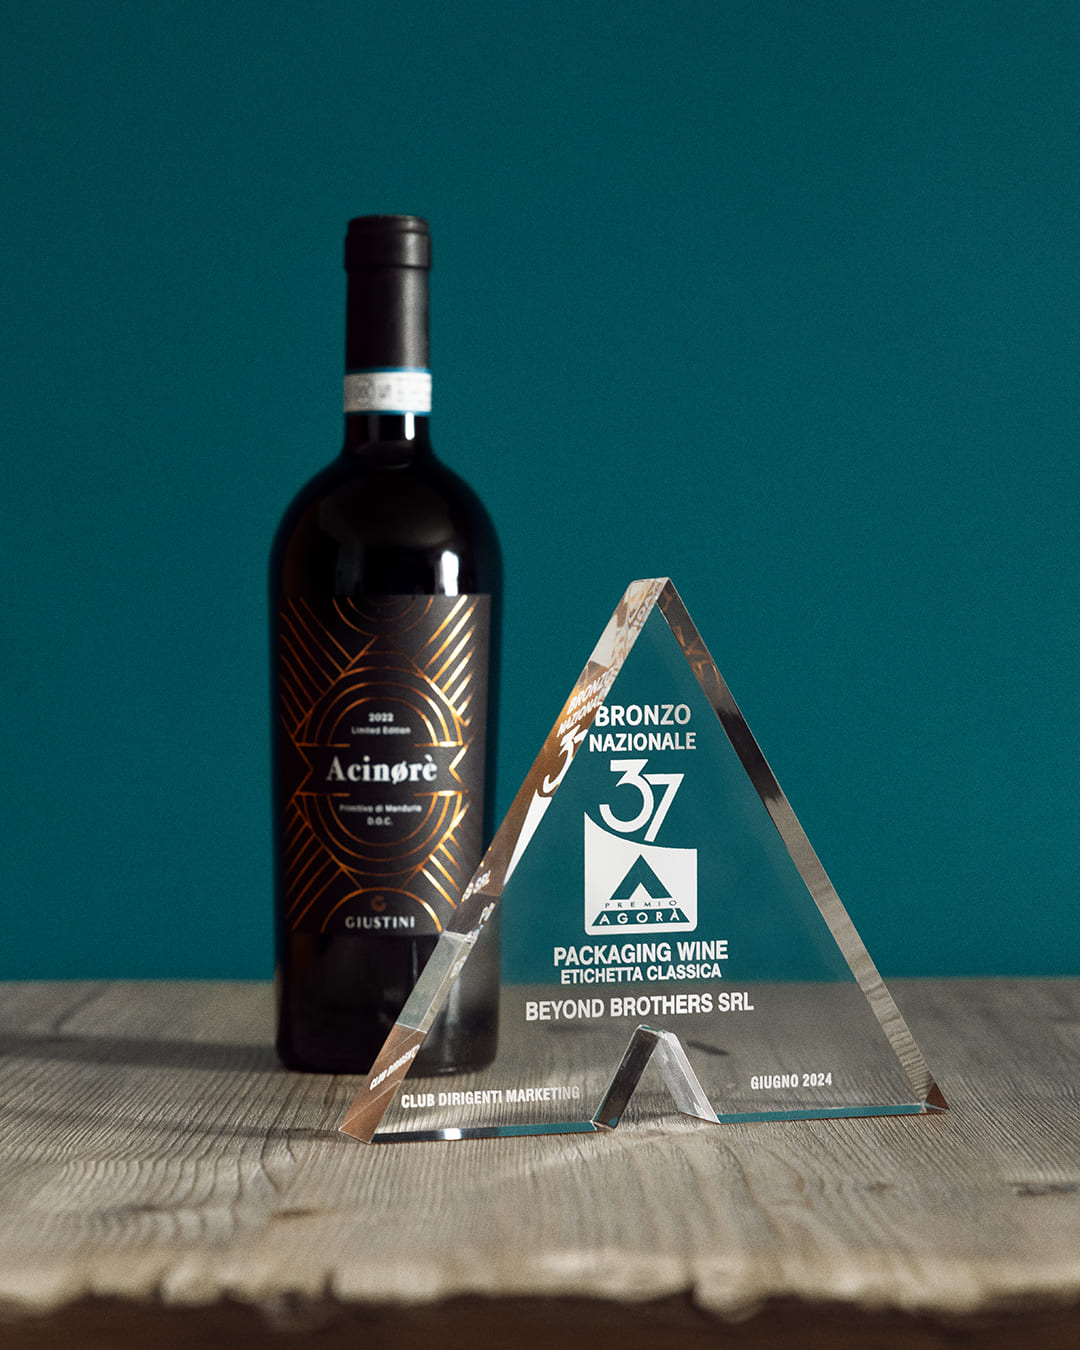 Premio Agorà: bronzo per l’etichetta di un vino prodotto a San Giorgio Ionico Acinorè della cantina Giustini